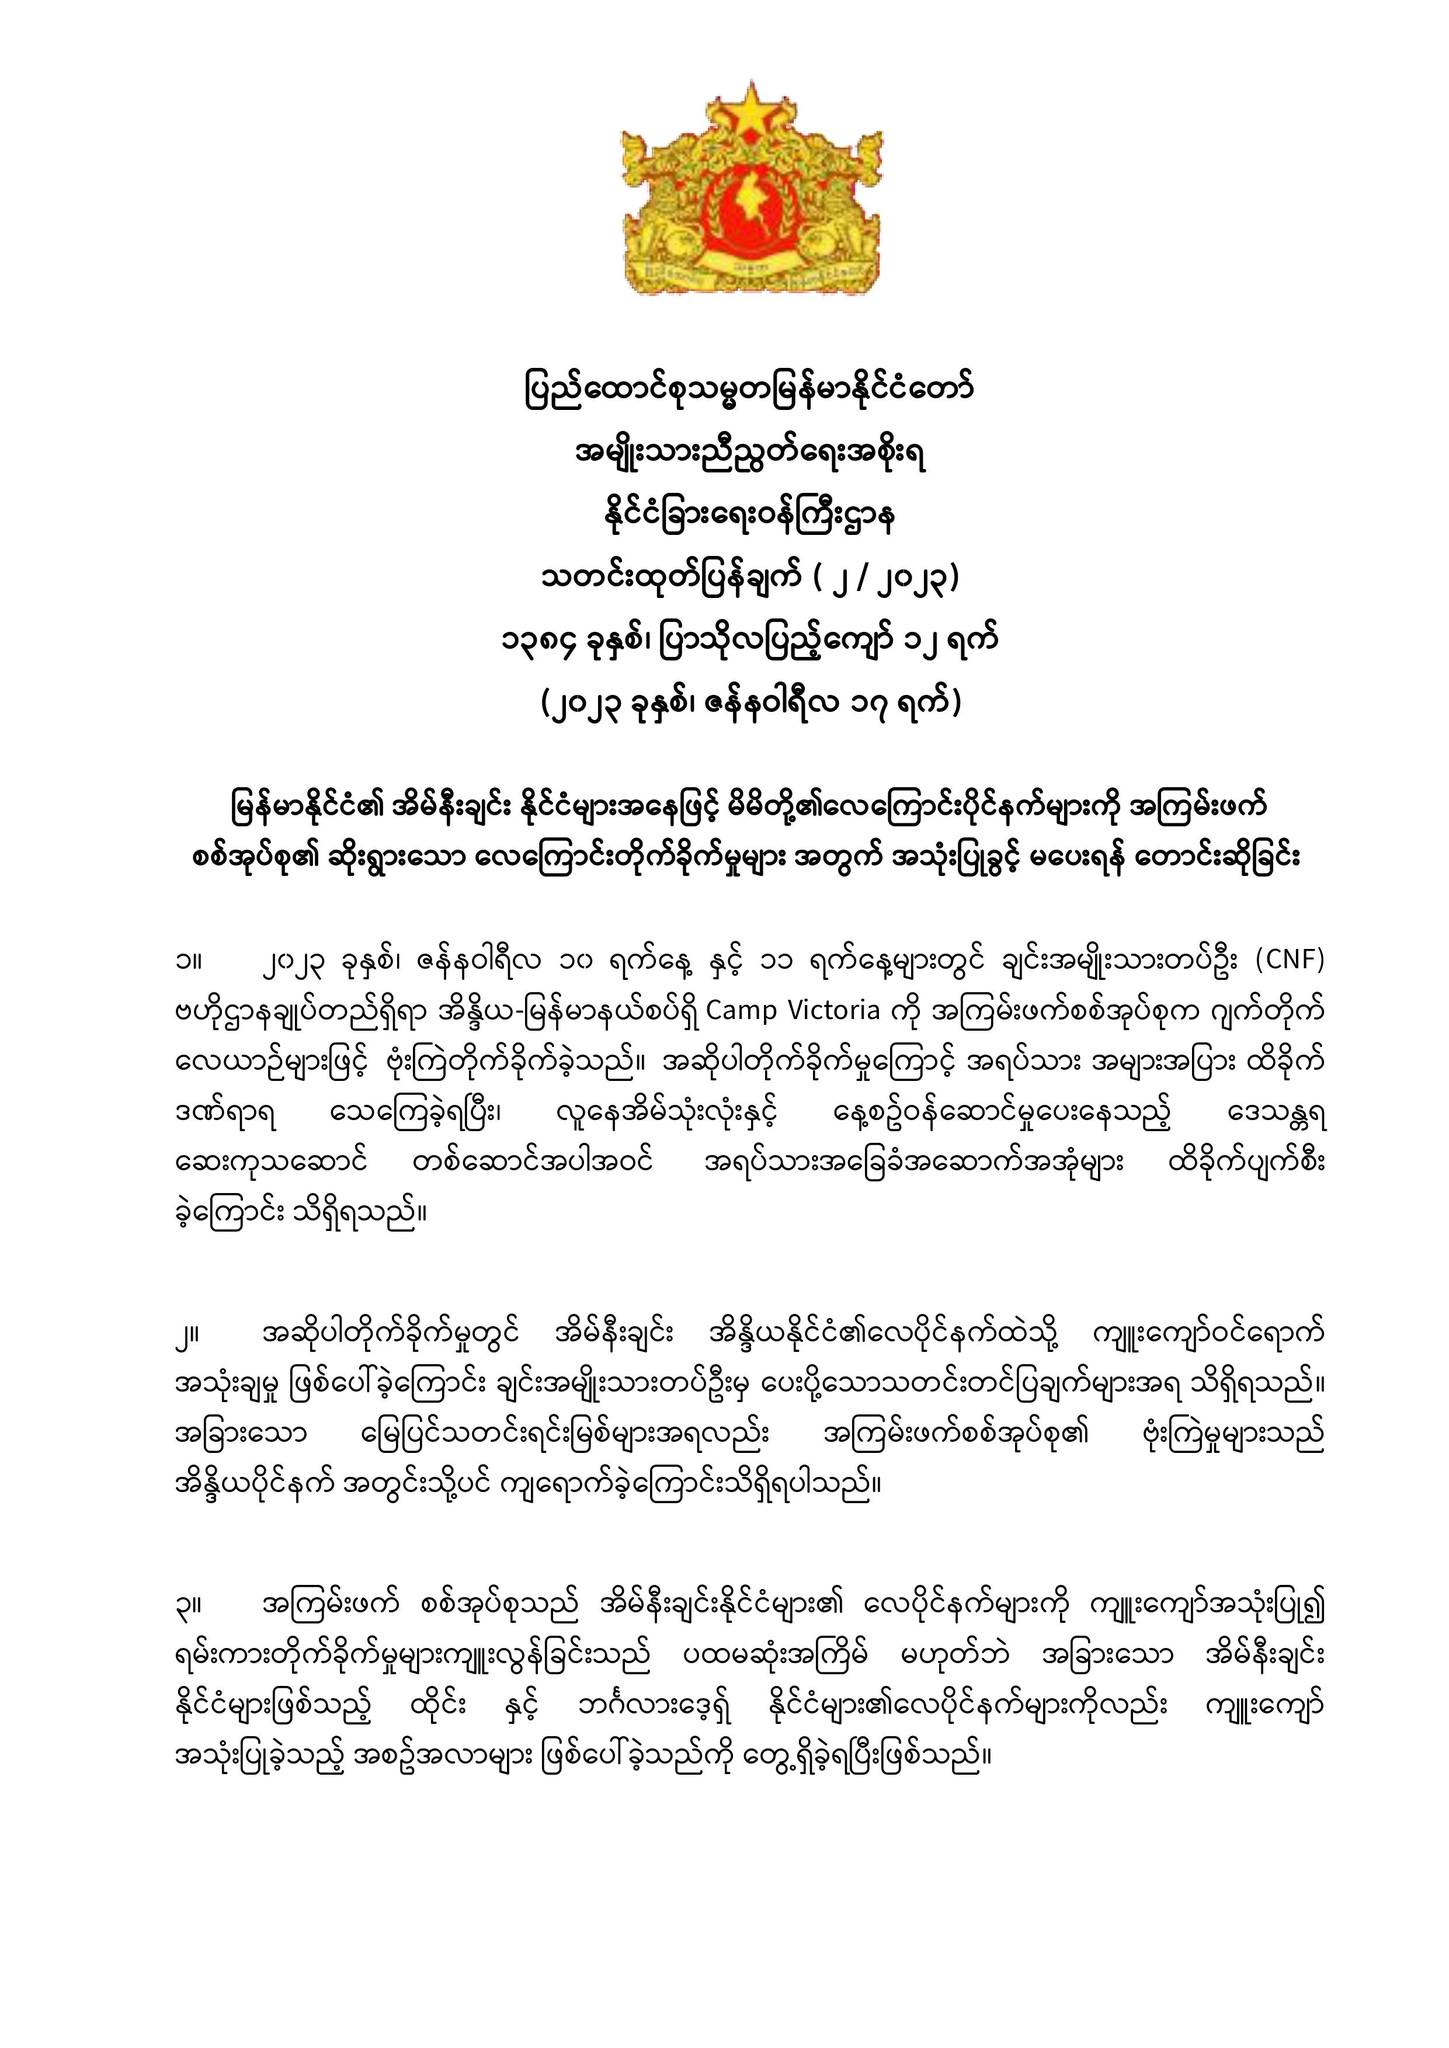 မြန်မာနိုင်ငံ၏အိမ်နီးချင်းနိုင်ငံများအနေဖြင့် မိမိတို့၏လေကြောင်းပိုင်နက်များကို အကြမ်းဖက်စစ်အုပ်စု၏ ဆိုးရွားသော လေကြောင်းတိုက်ခိုက်မှုများ အတွက် အသုံးပြုခွင့် မပေးရန် တောင်းဆိုခြင်း